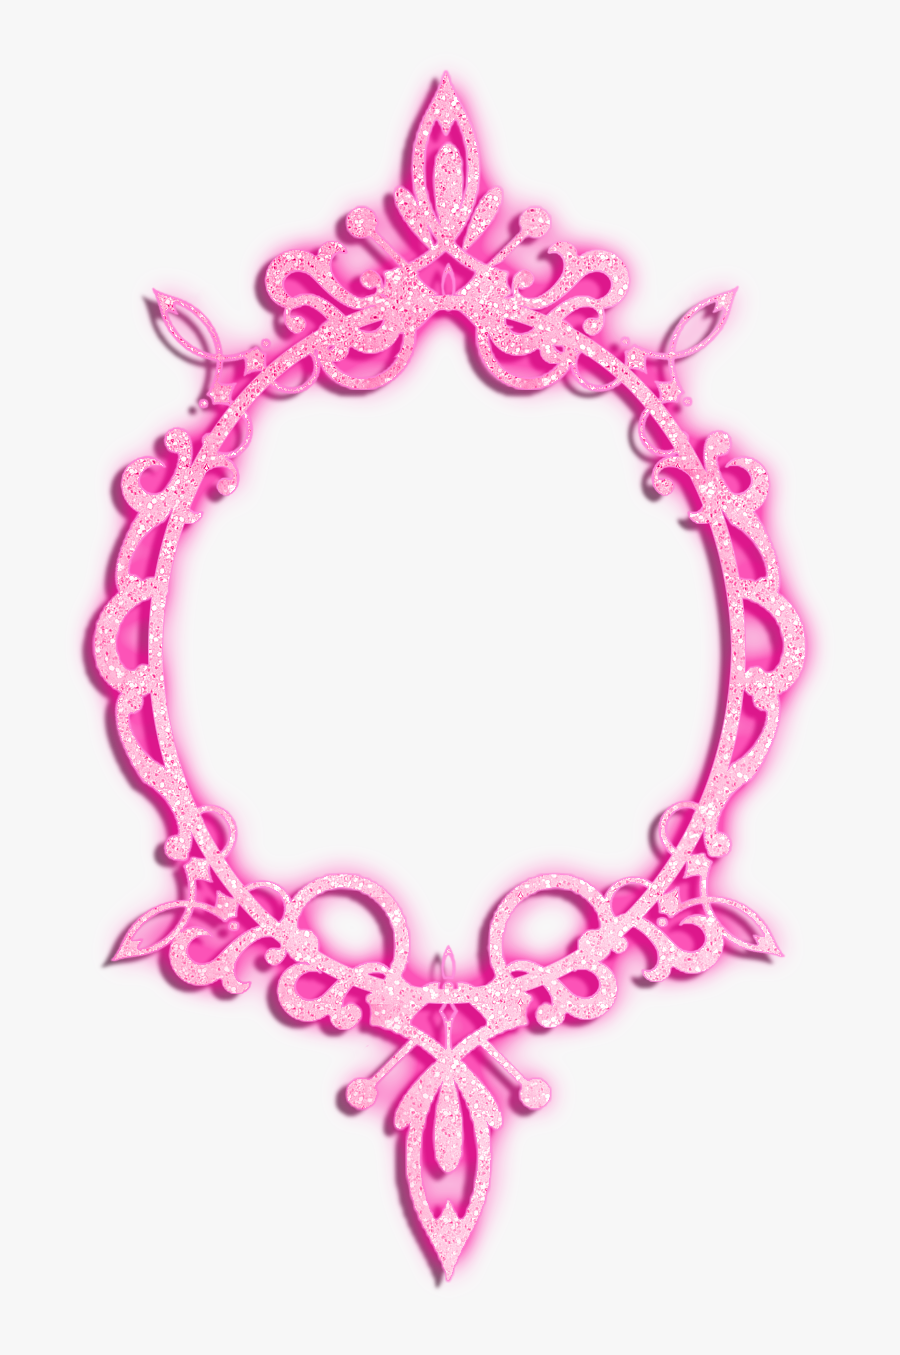 Glitter Clip Art Clipart - Transparent Pink Glitter Png, Transparent Clipart